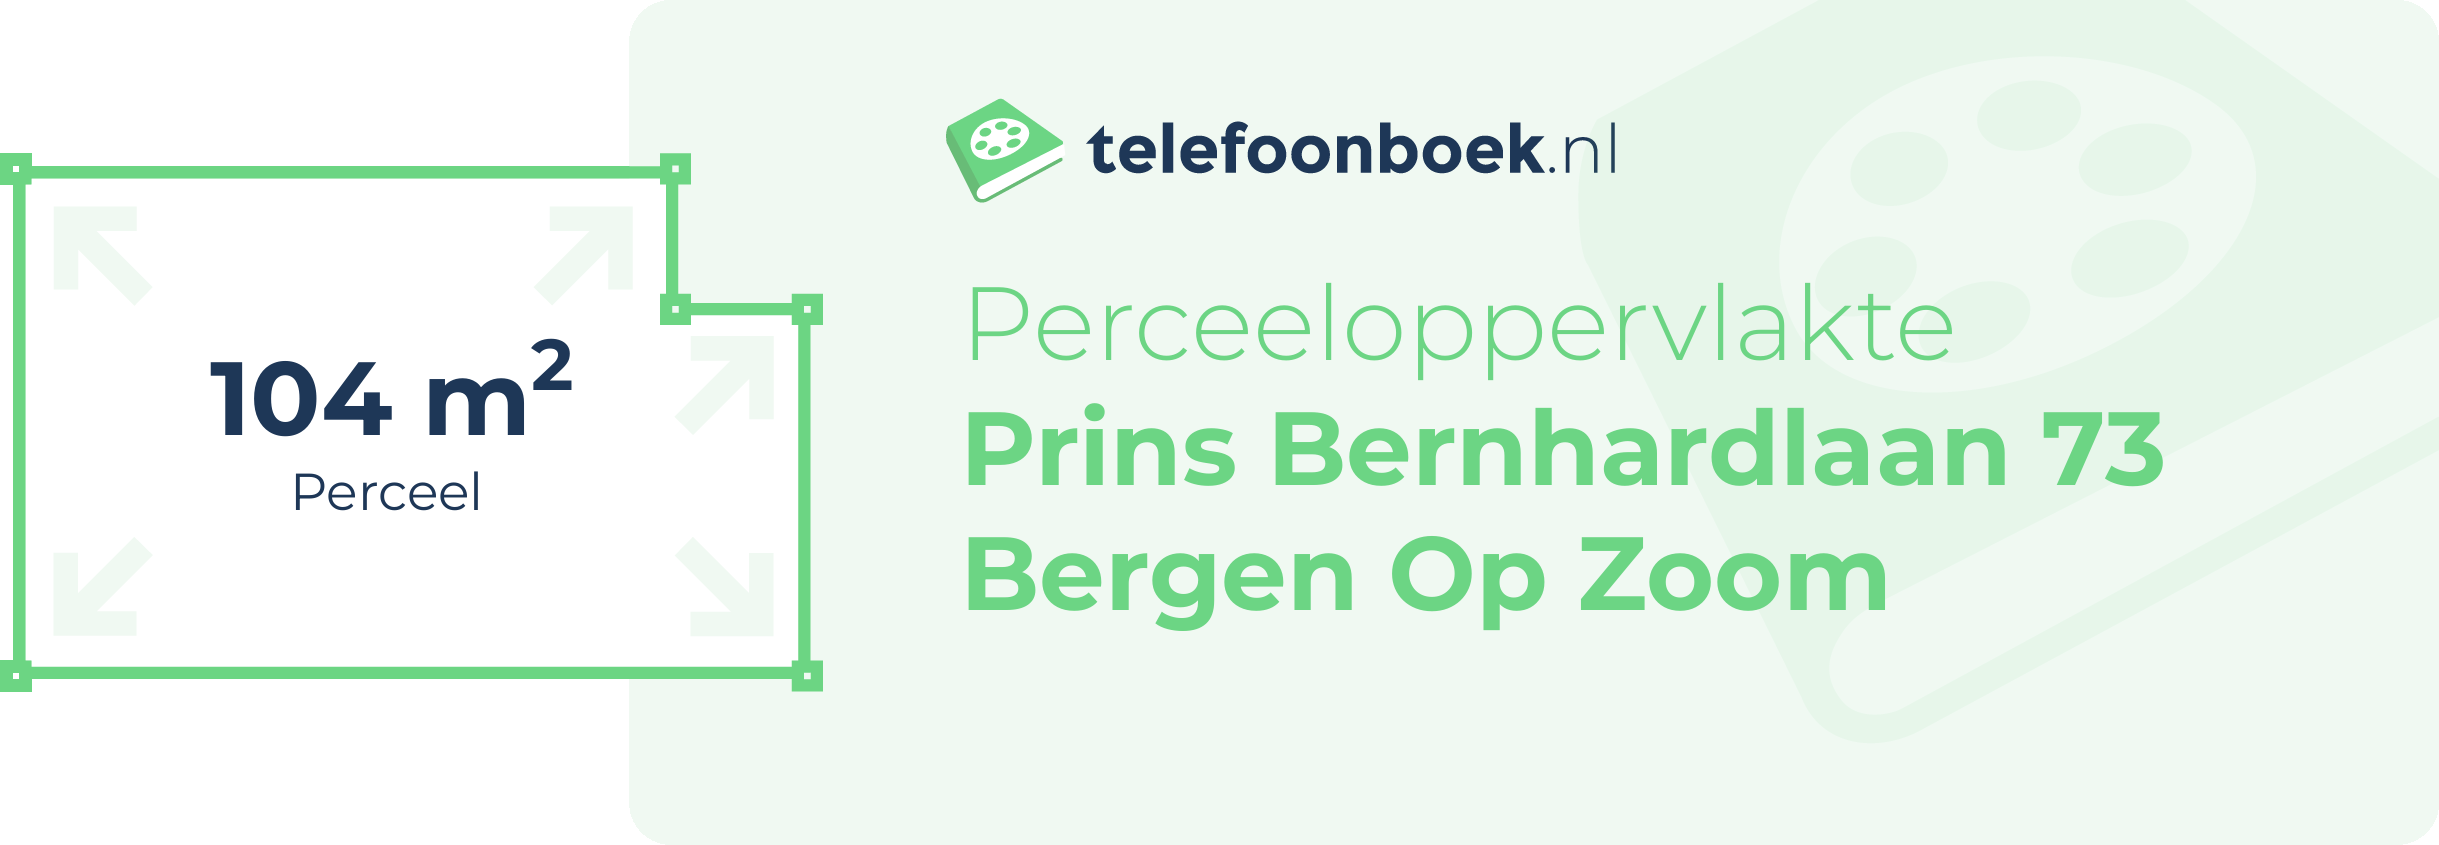 Perceeloppervlakte Prins Bernhardlaan 73 Bergen Op Zoom